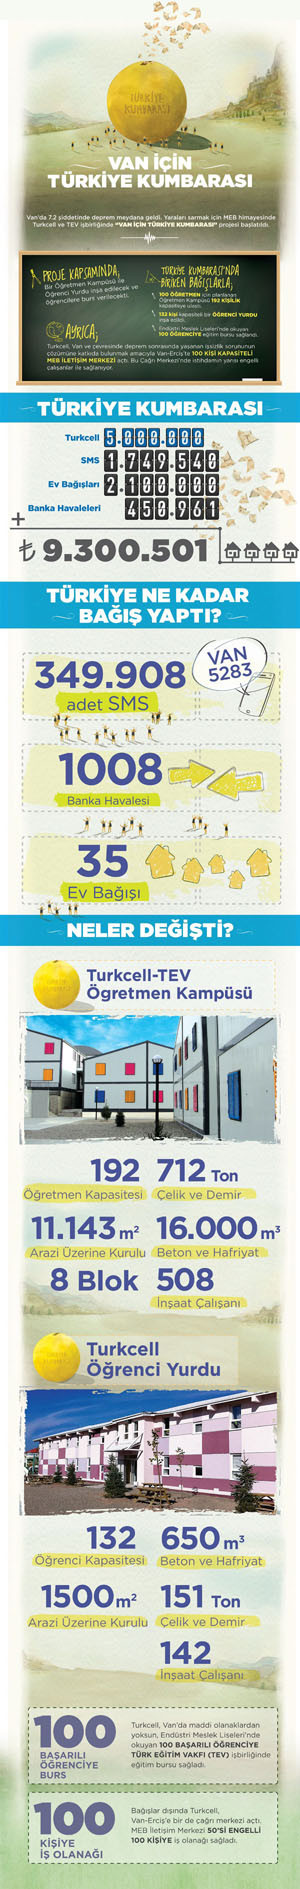 1365152810_rakamlarla-van-icin-turkiye-kumbarasi-infografik.jpg